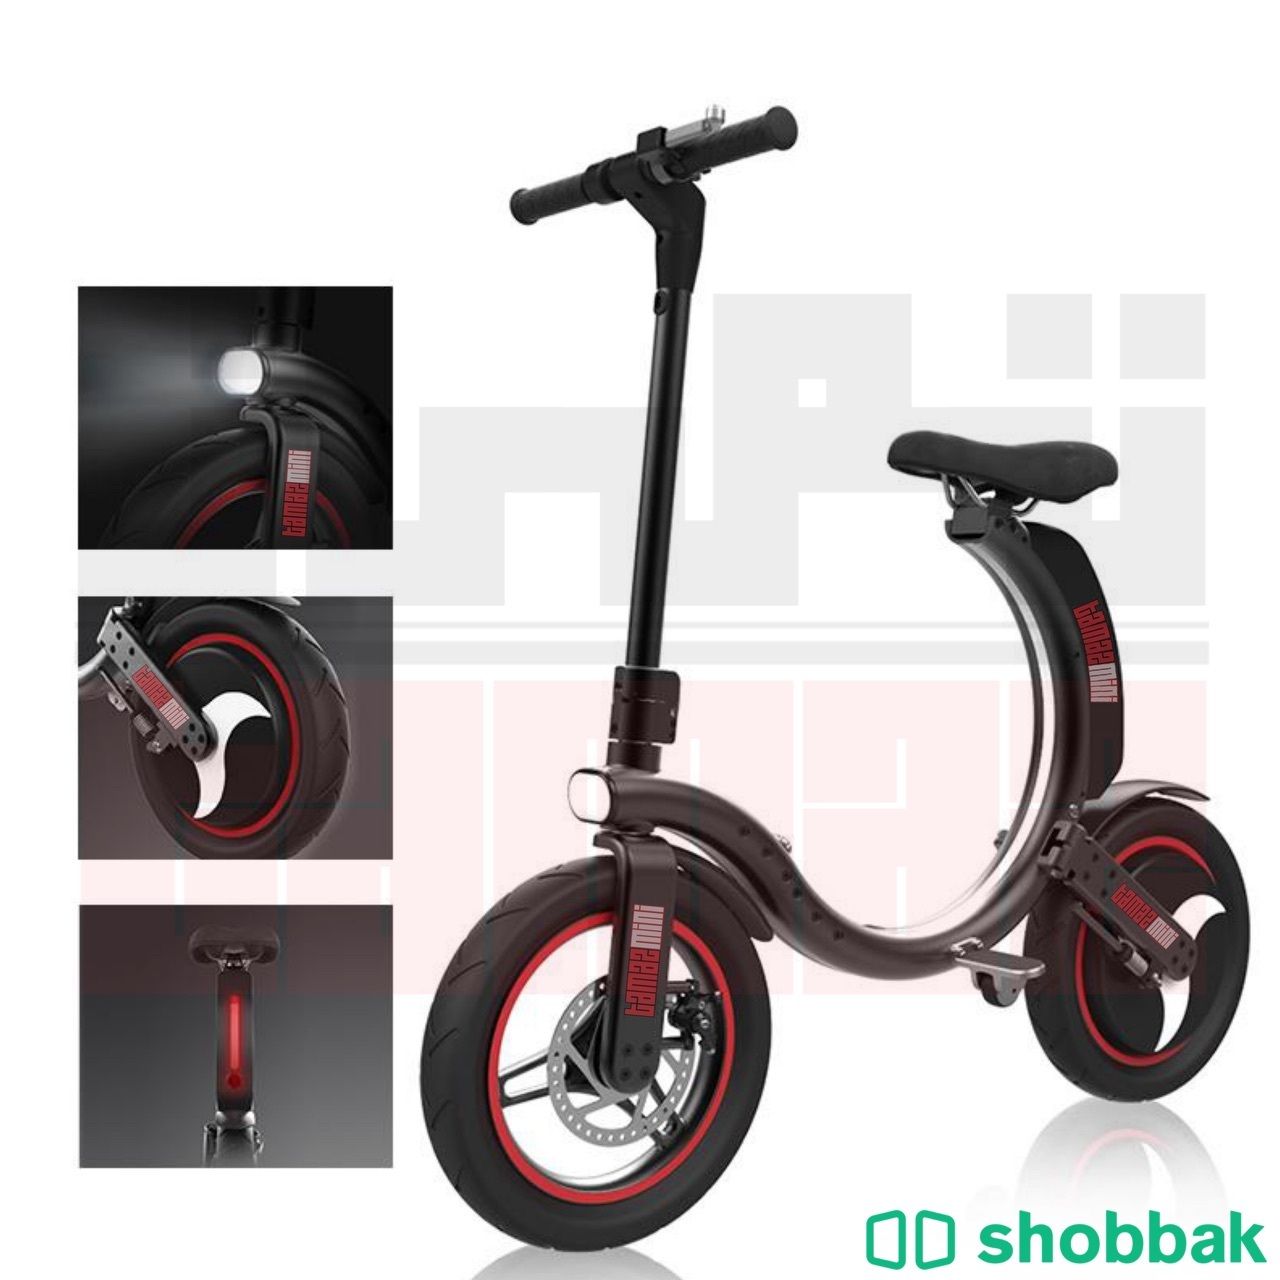 داجة كهربائية - دراجة تنطوي بسهولة  Shobbak Saudi Arabia